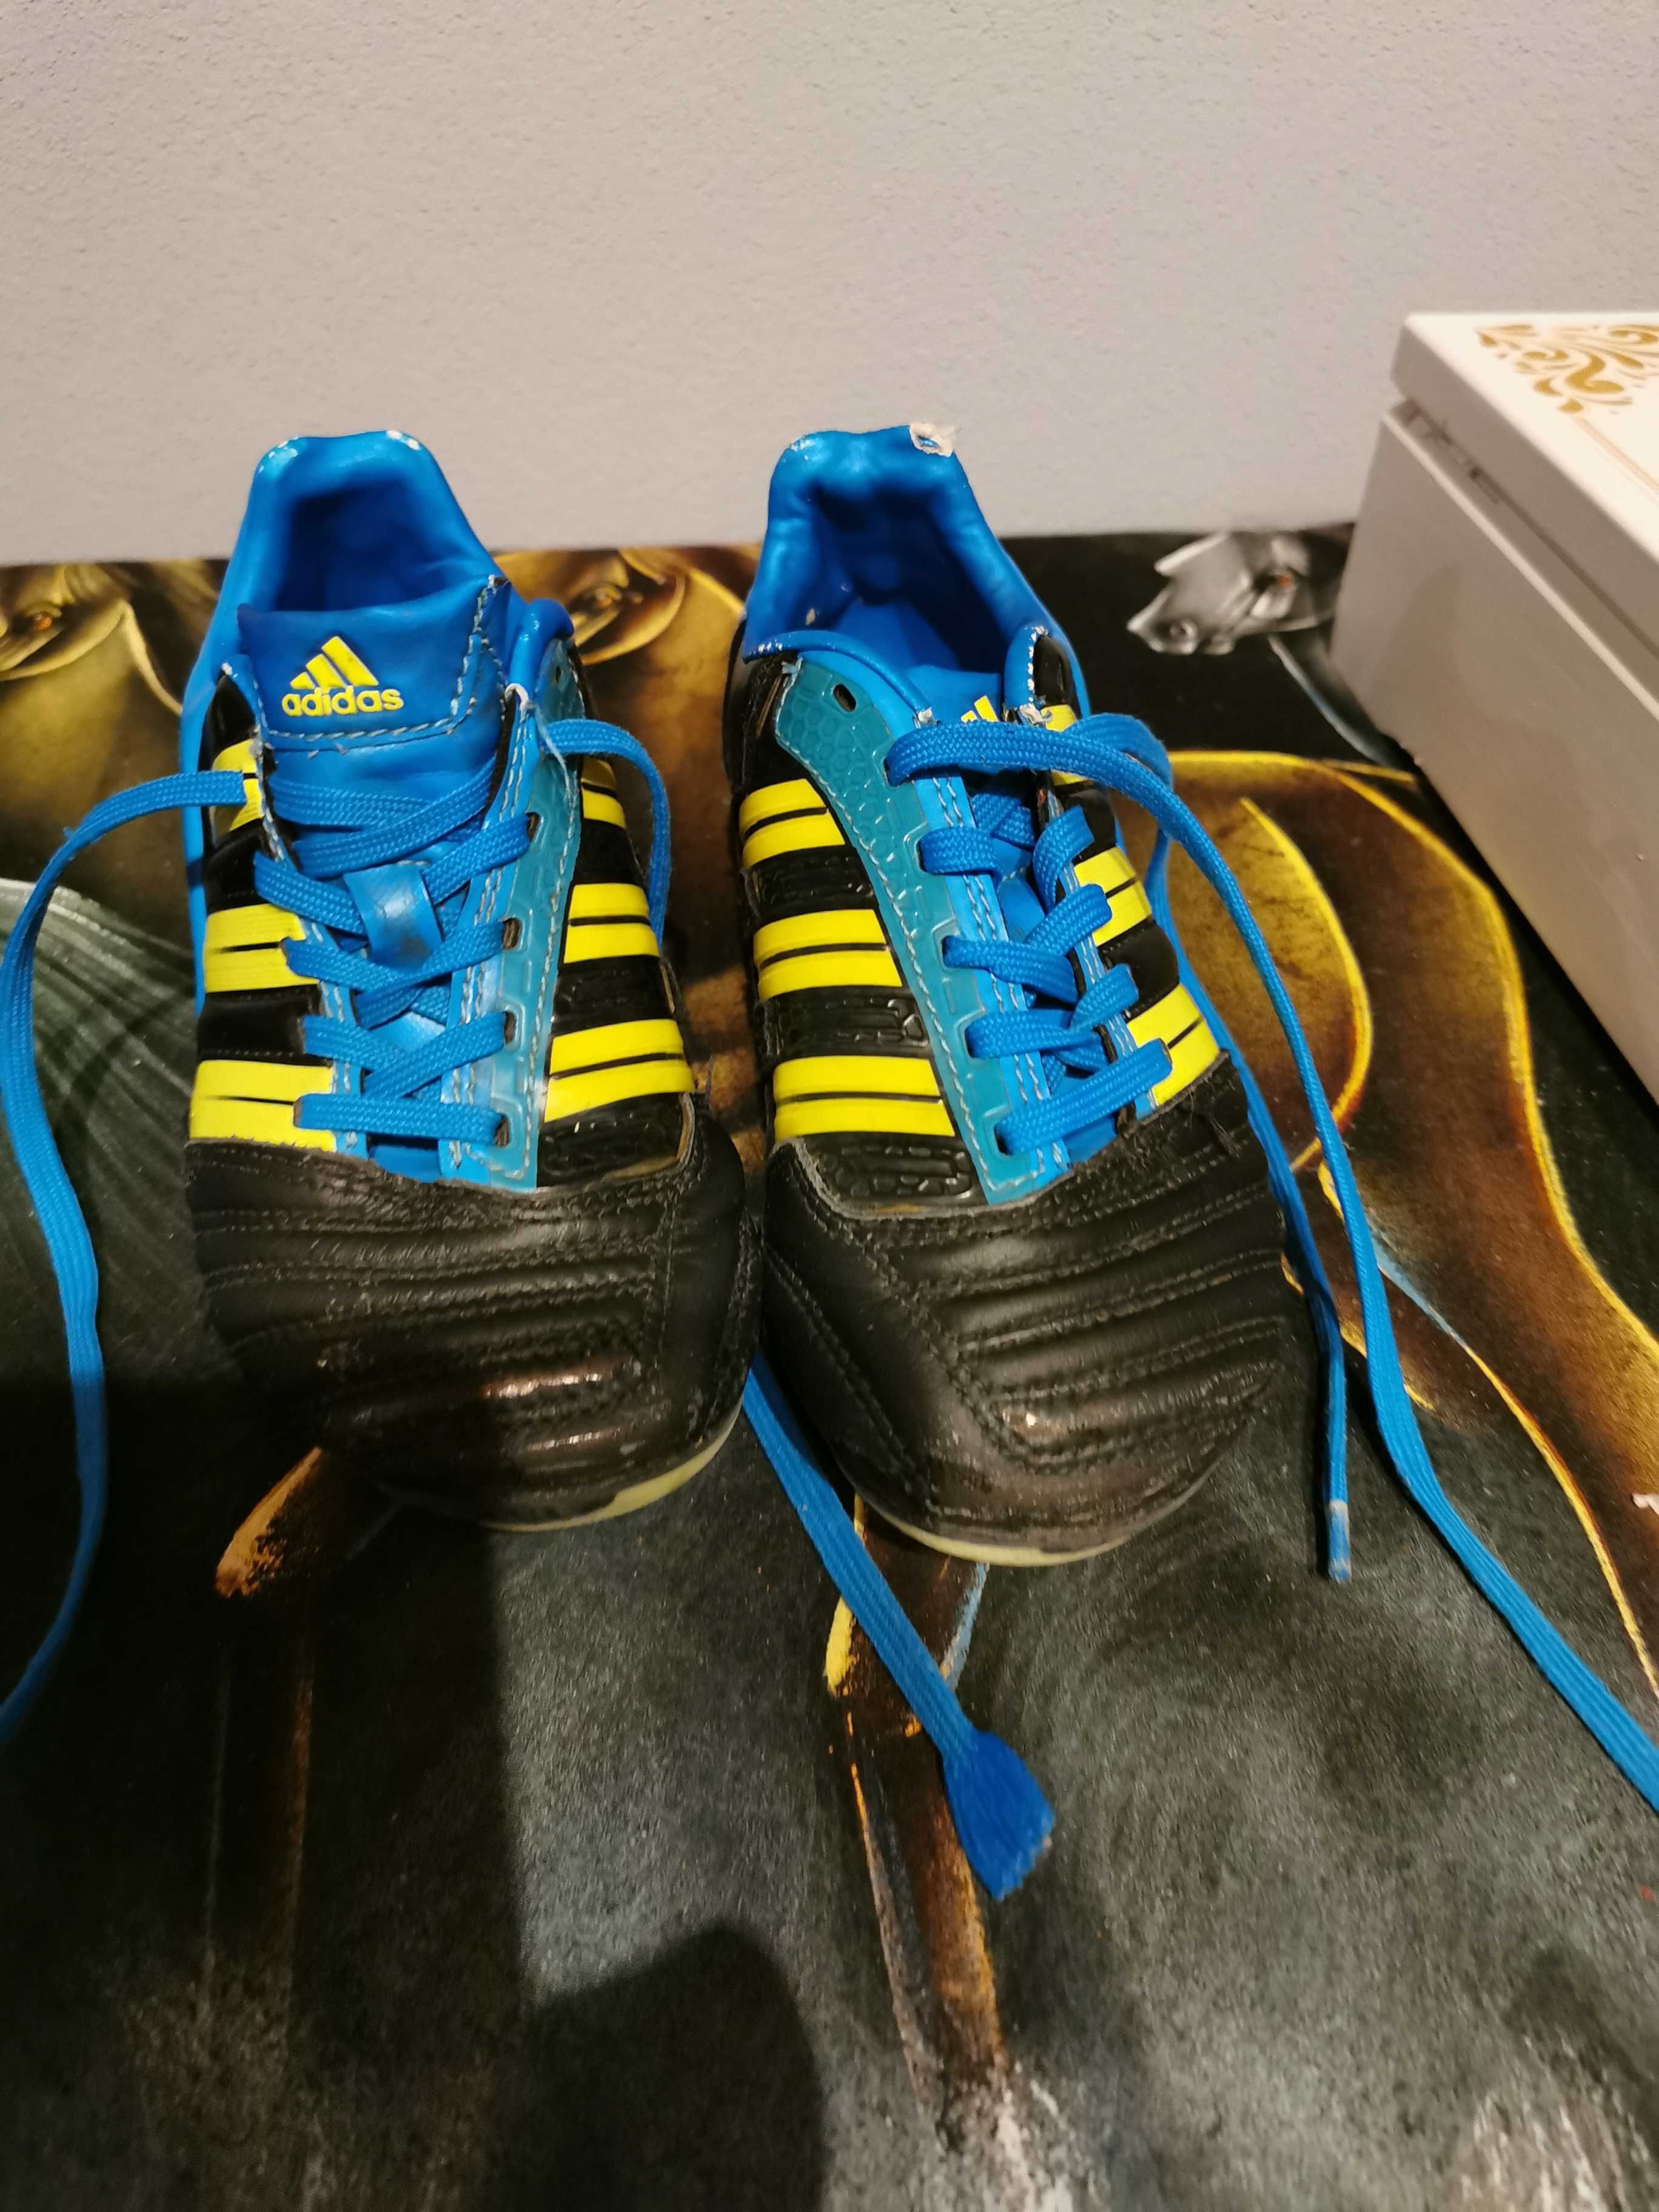 Korki chłopięce adidas, buty do piłki nożnej r 27